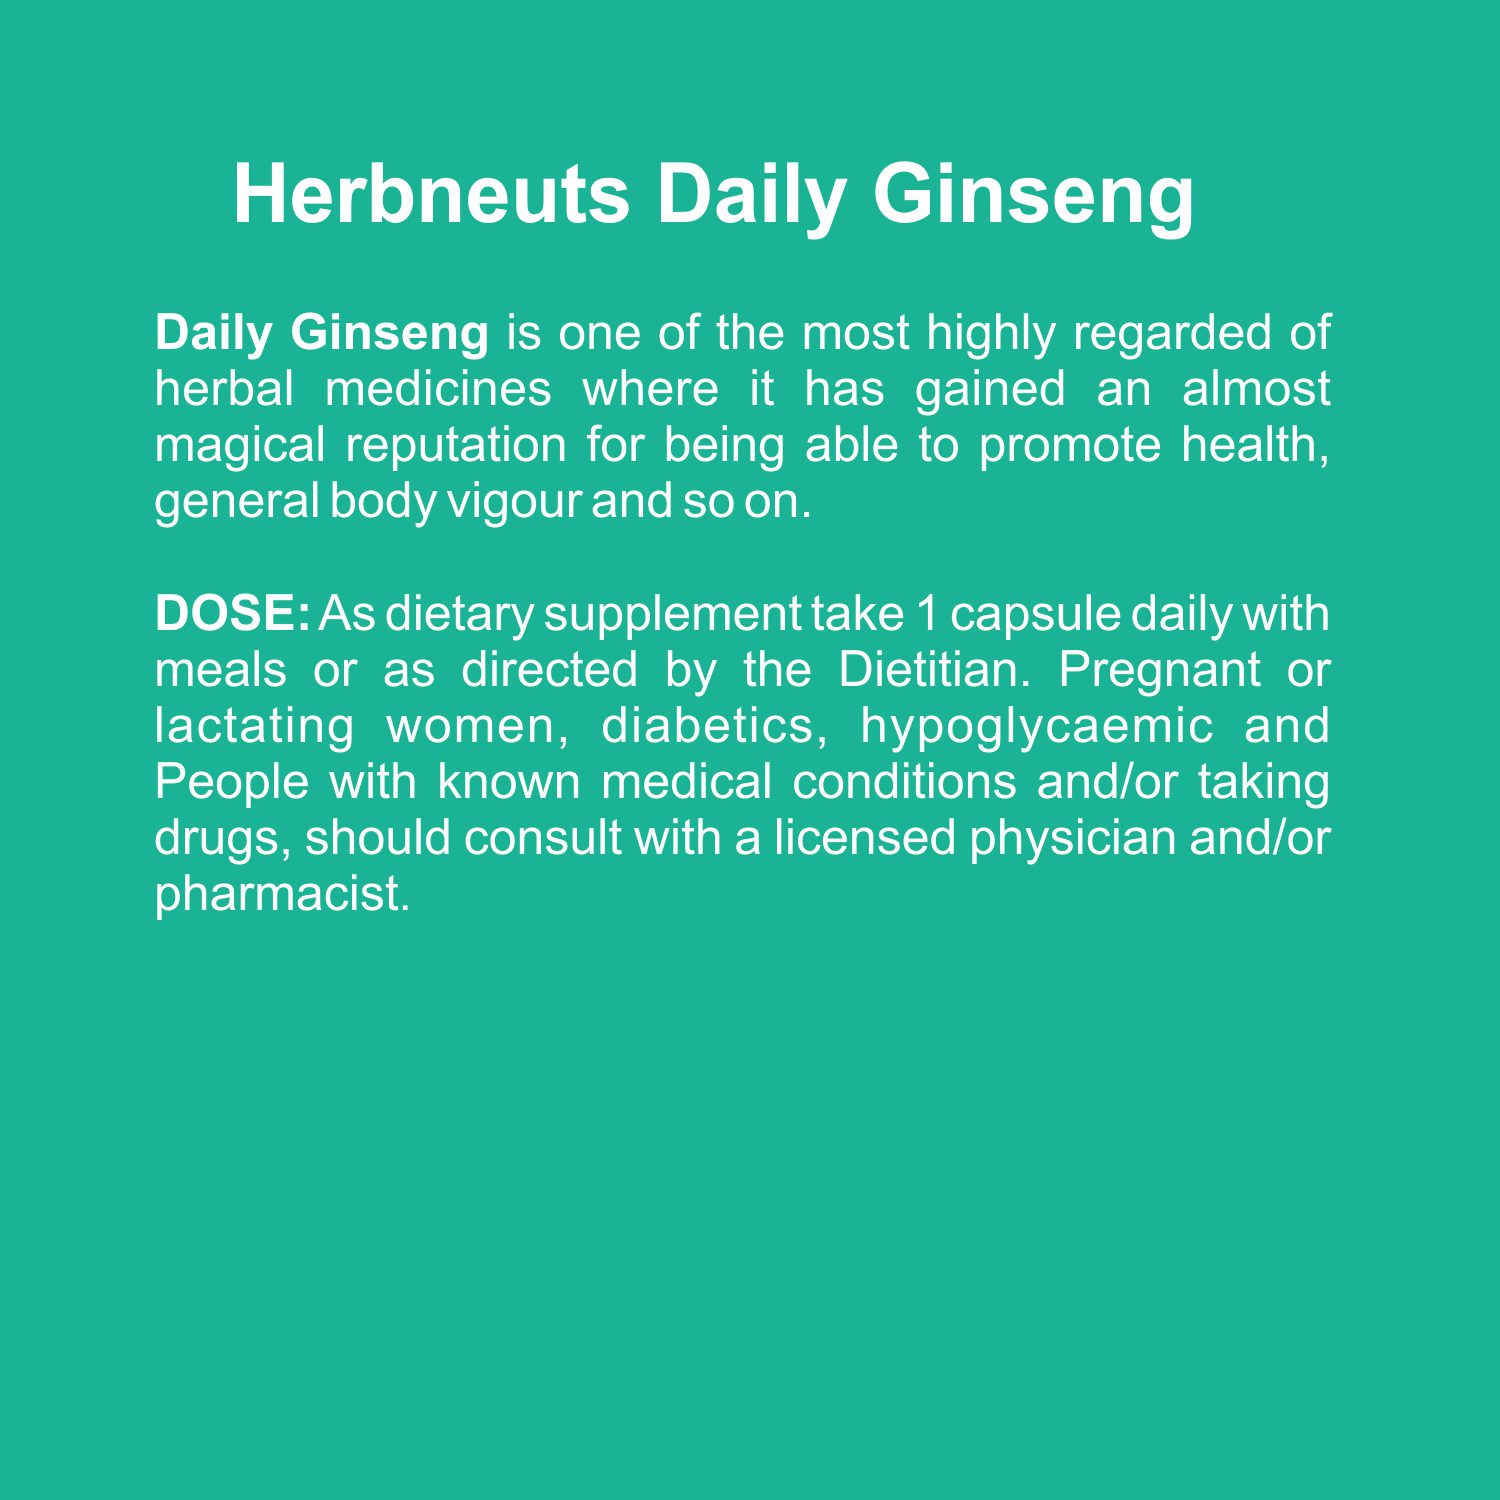 Daily Ginseng